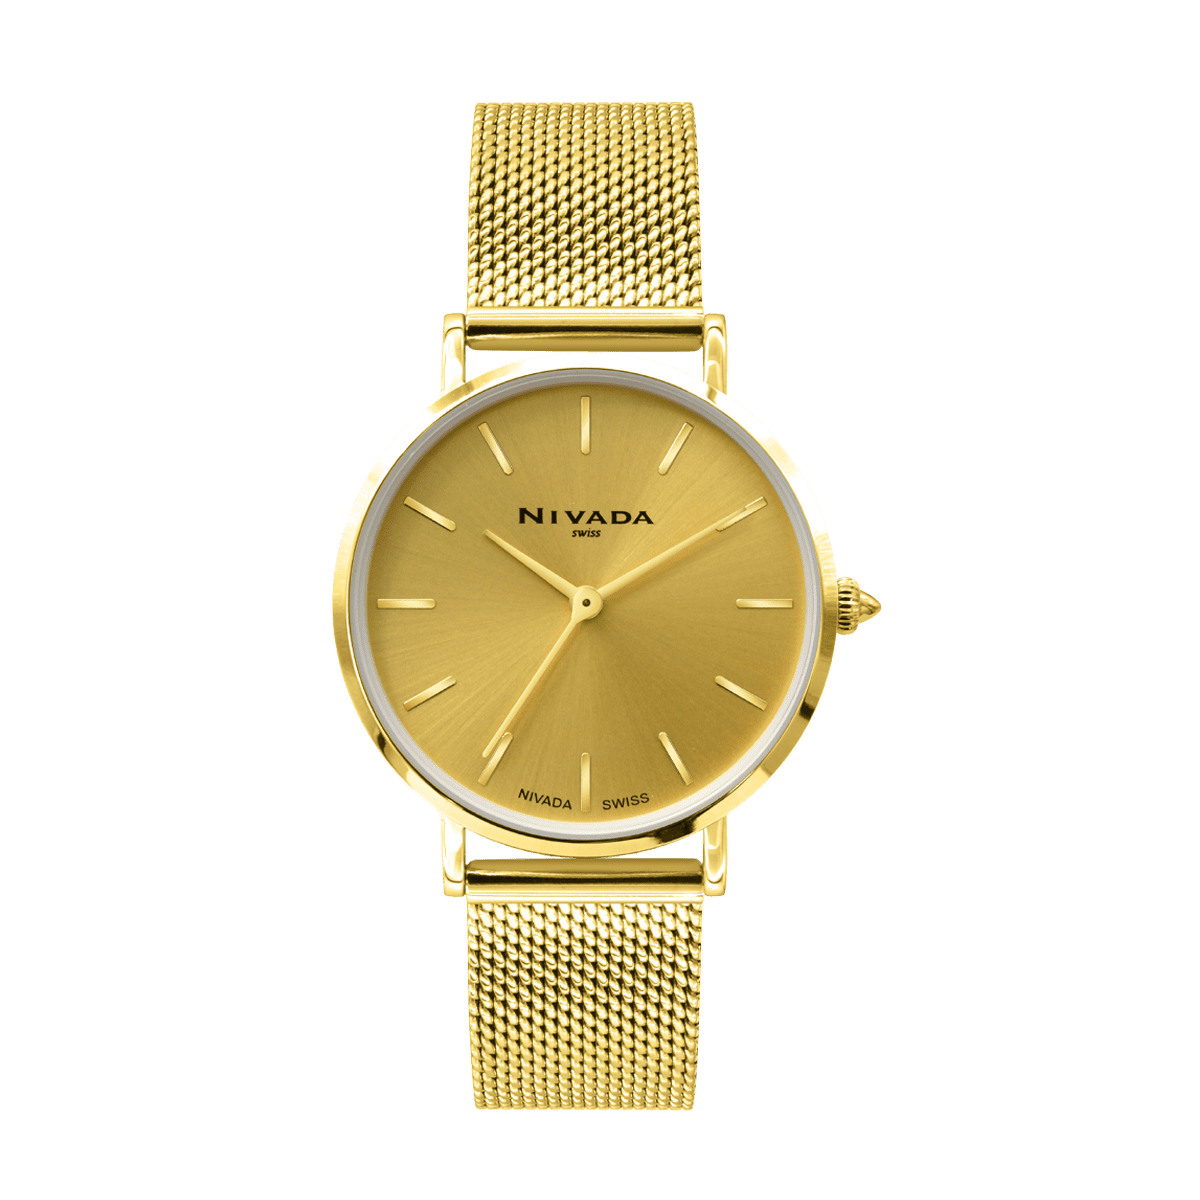 Fashion Mesh Para Dama - Altitud 230 - Reloj Nivada Swiss